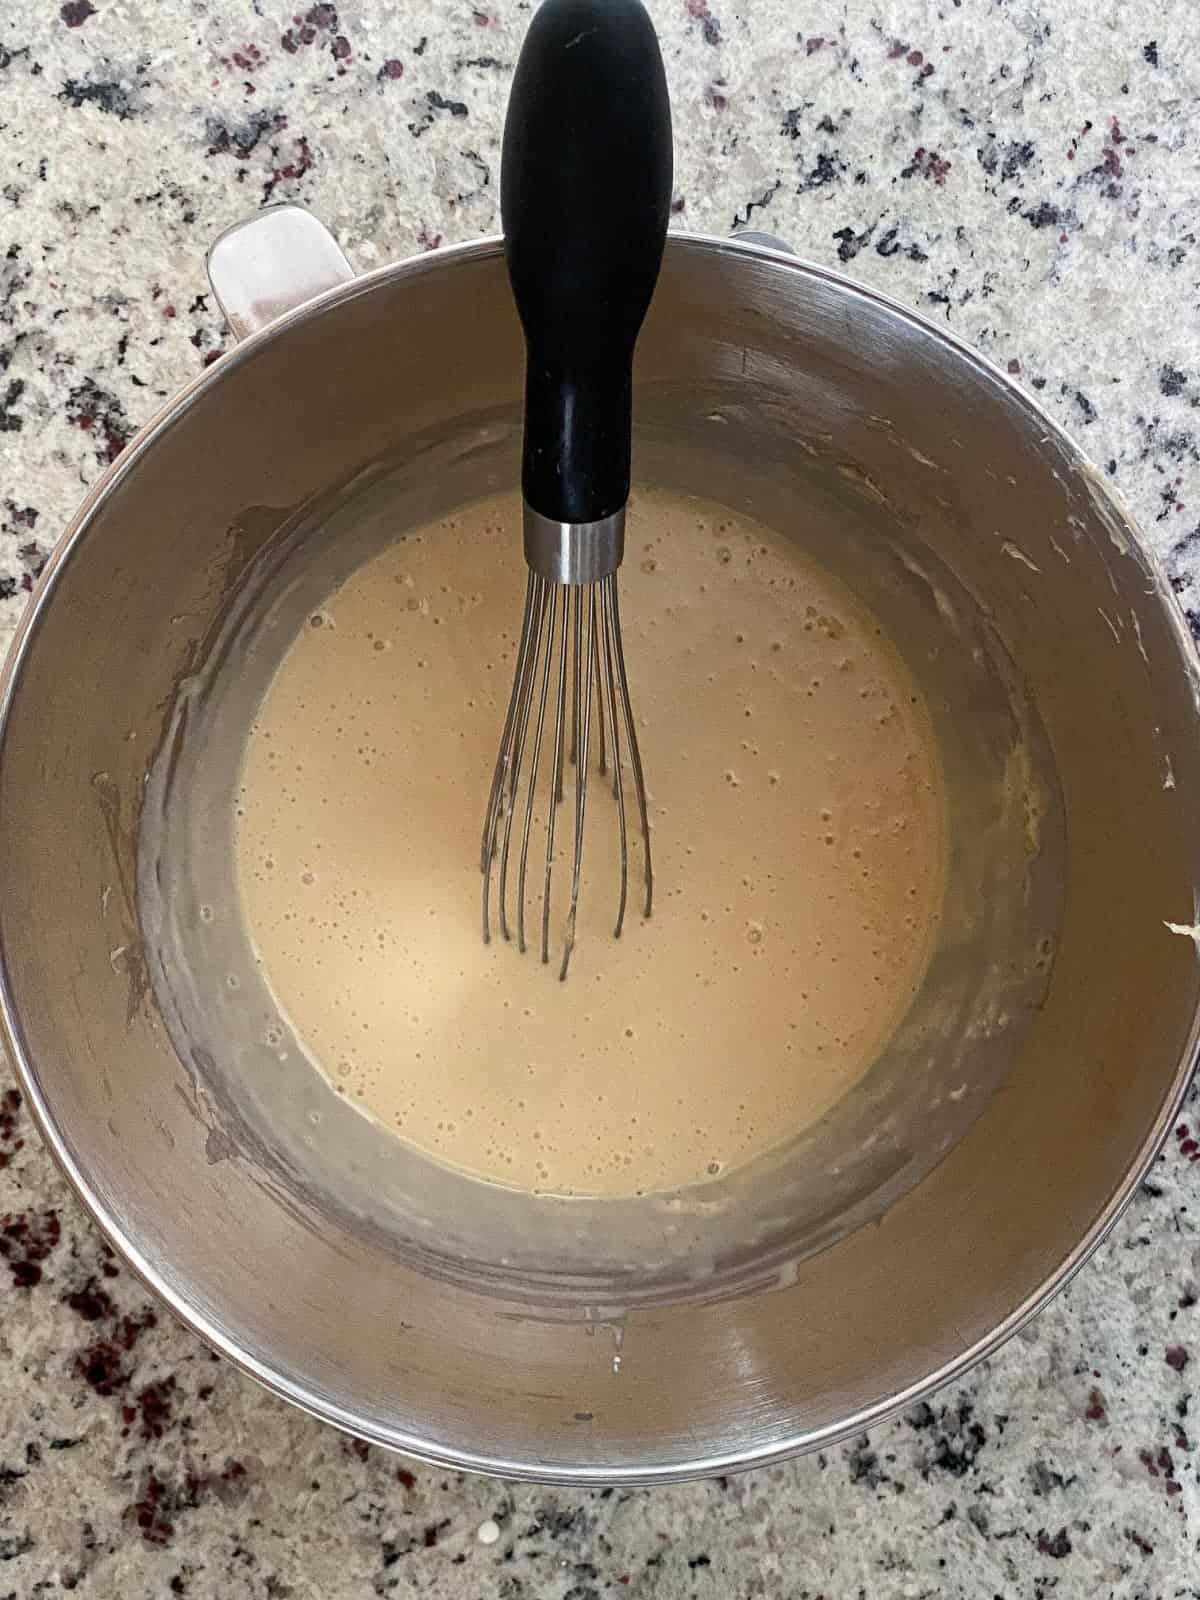 Making Cinnamon Pie, step 3.